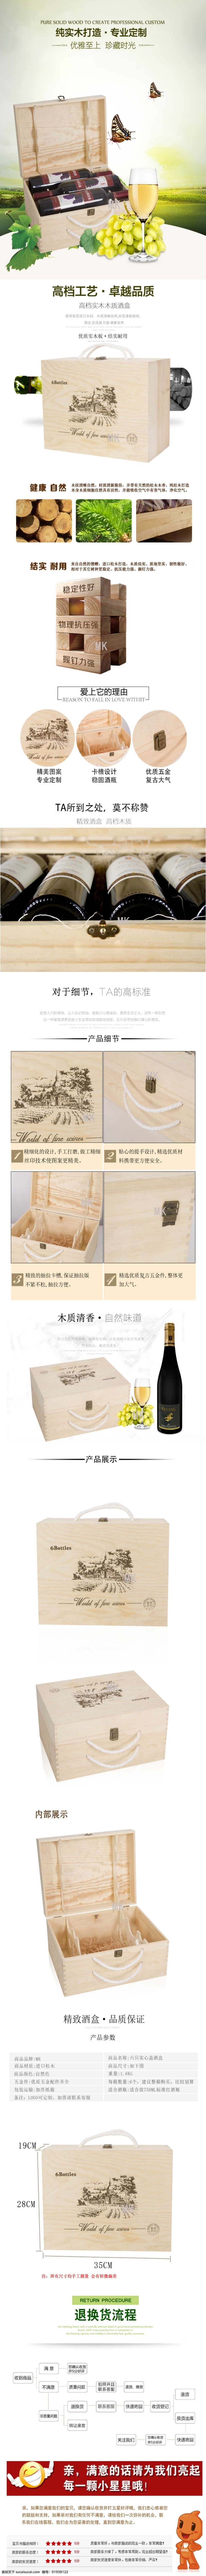 淘宝详情页 酒盒详情页 原创设计 简约设计 淘宝详情 白色